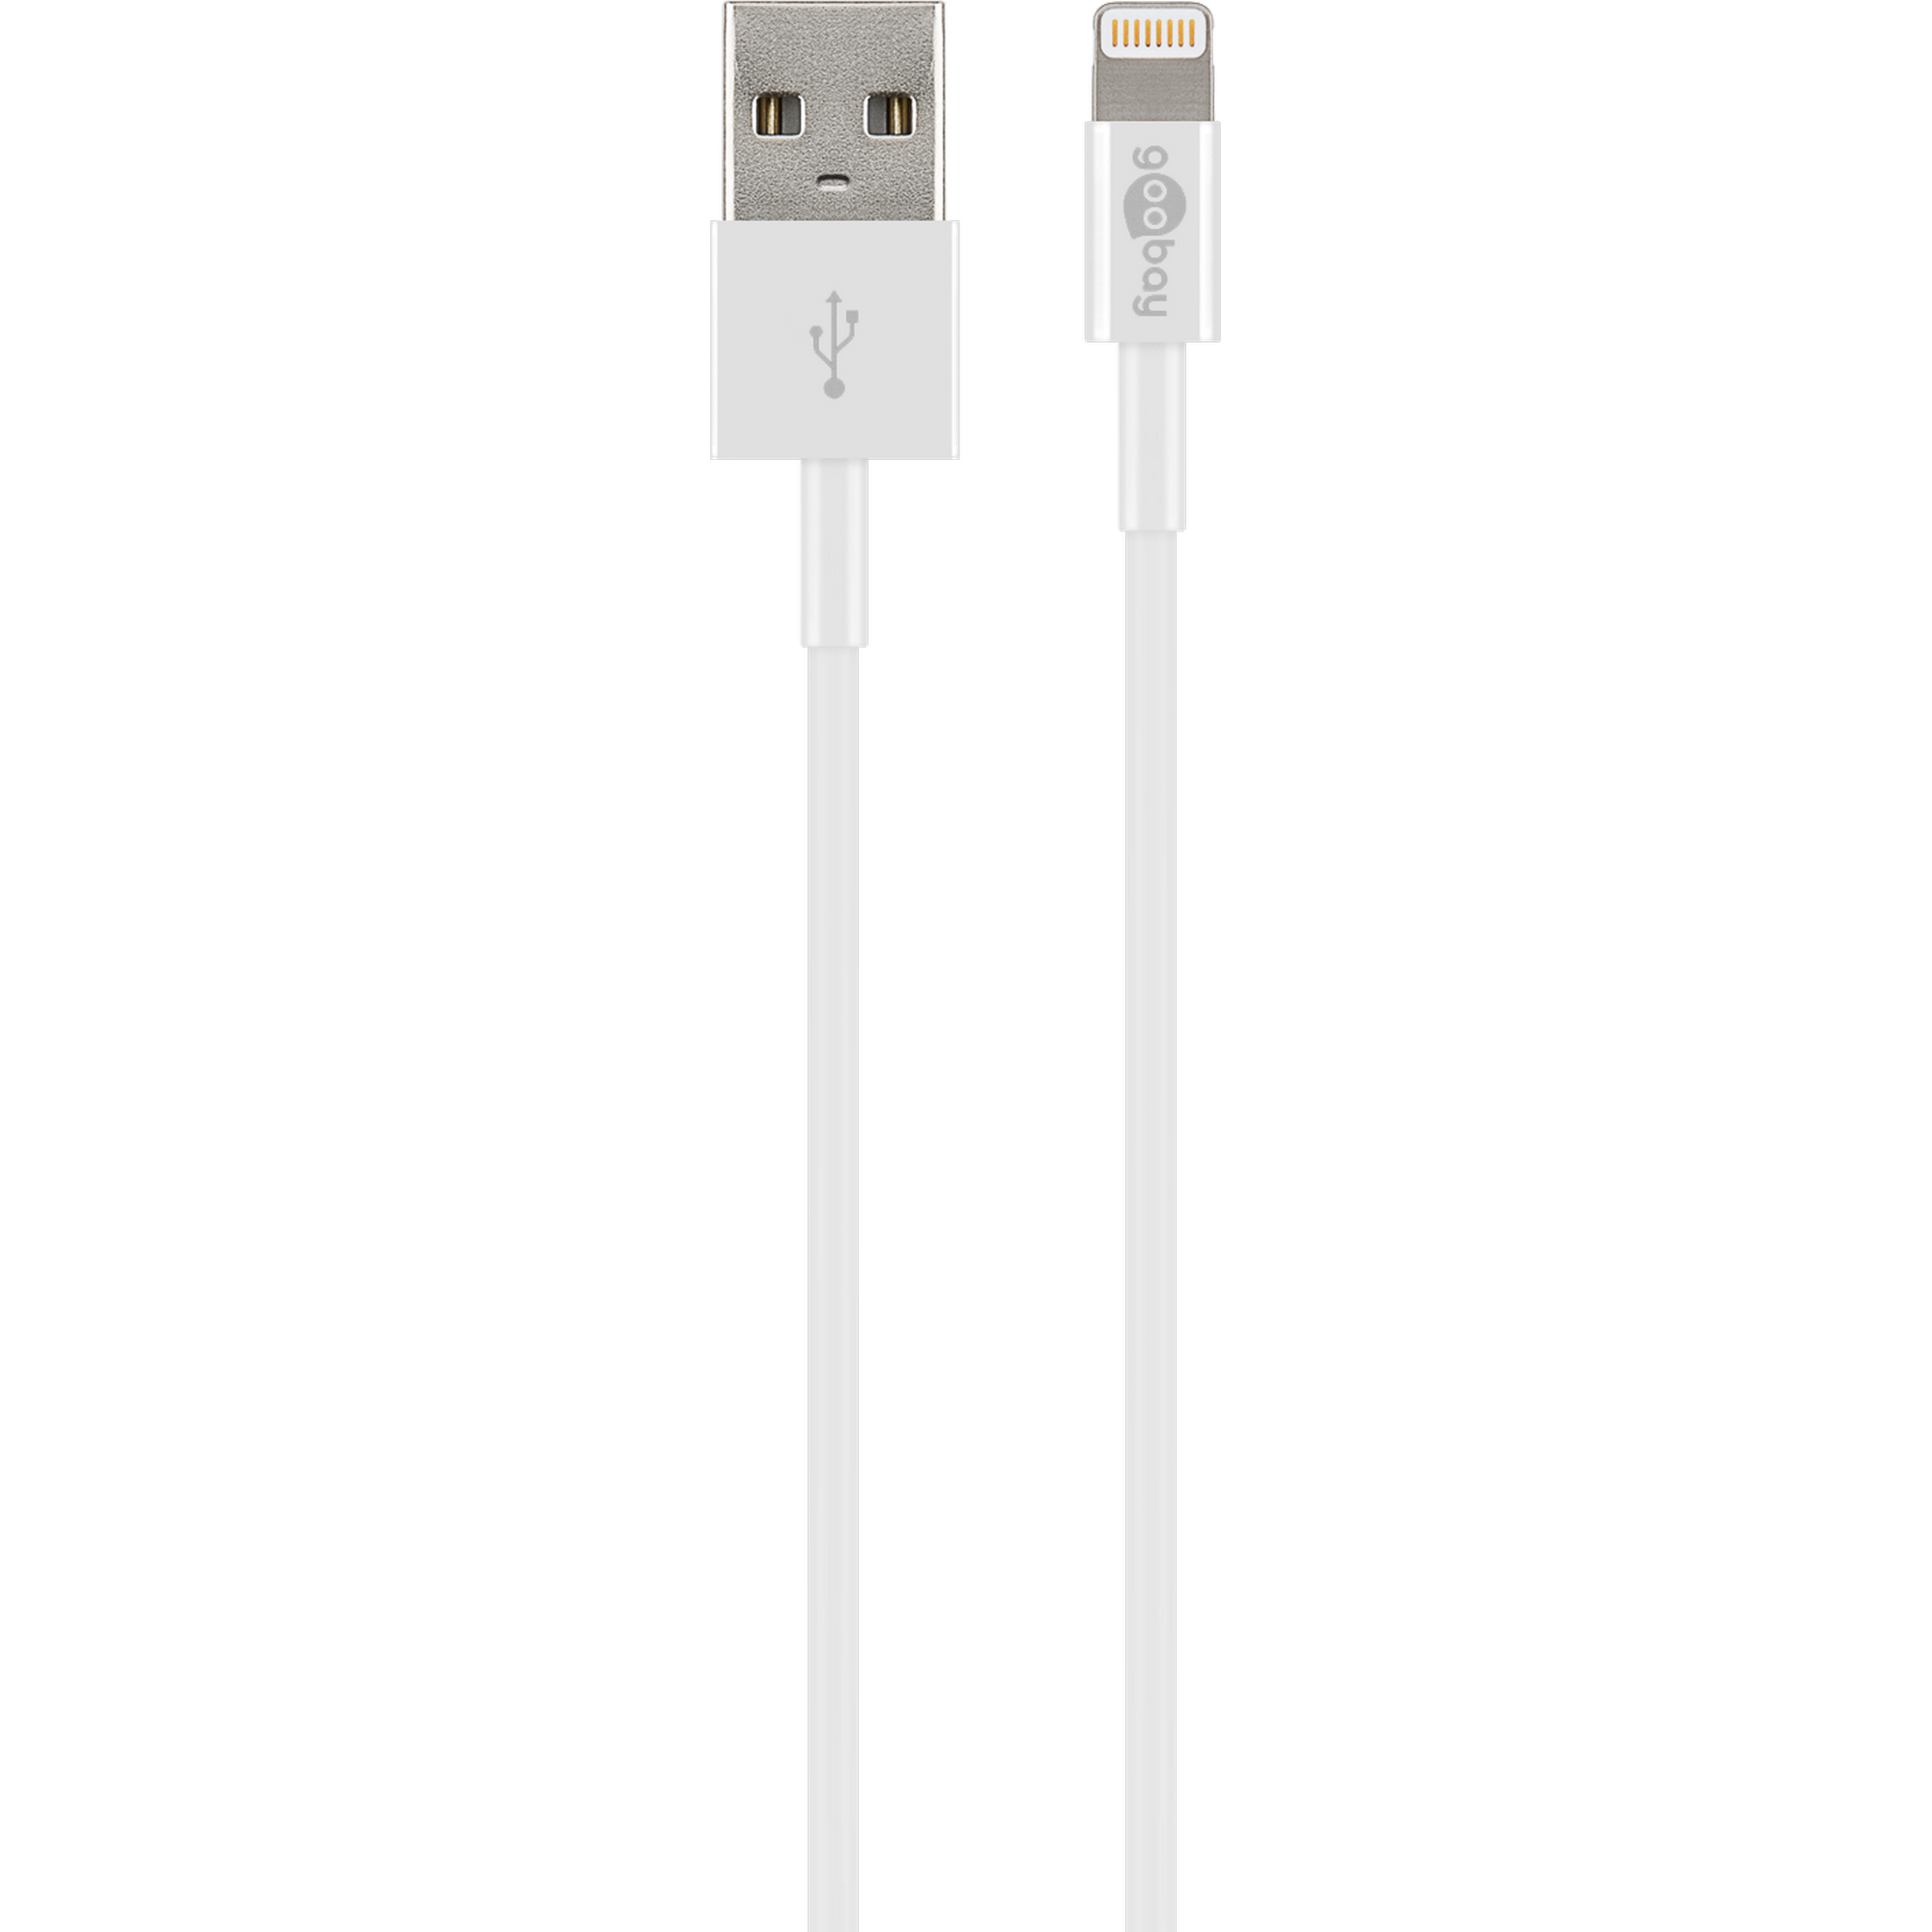 Dual-USB-Ladegerät, USB Lightning Ladekabel + product picture